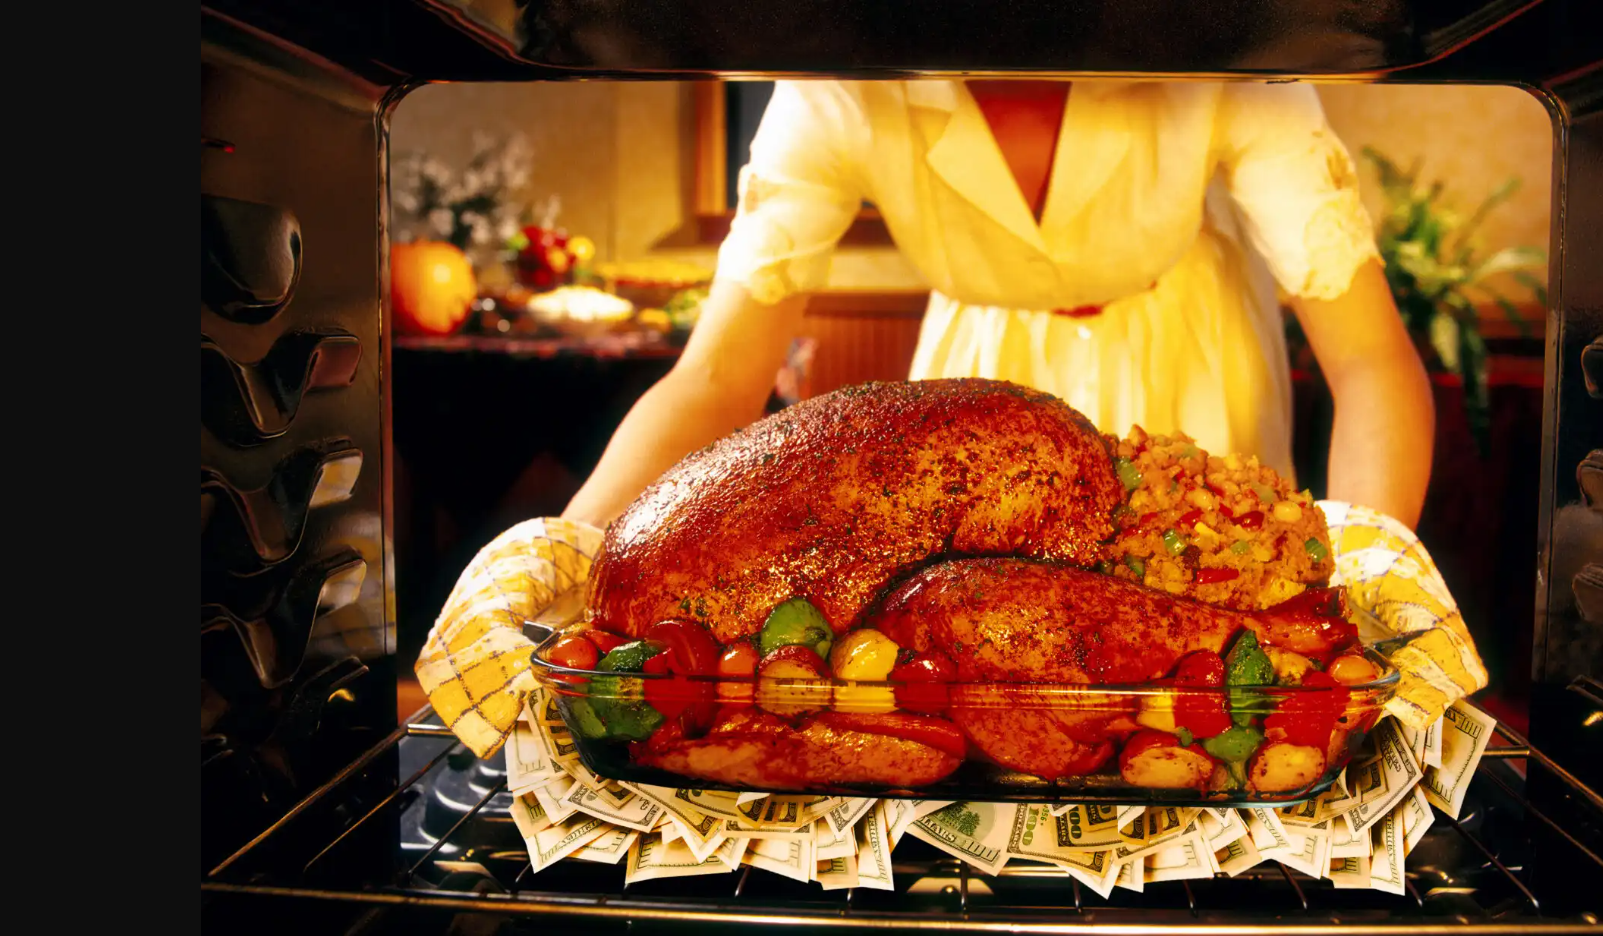 Image of Thanksgiving Turkey atop pile of $100 bills